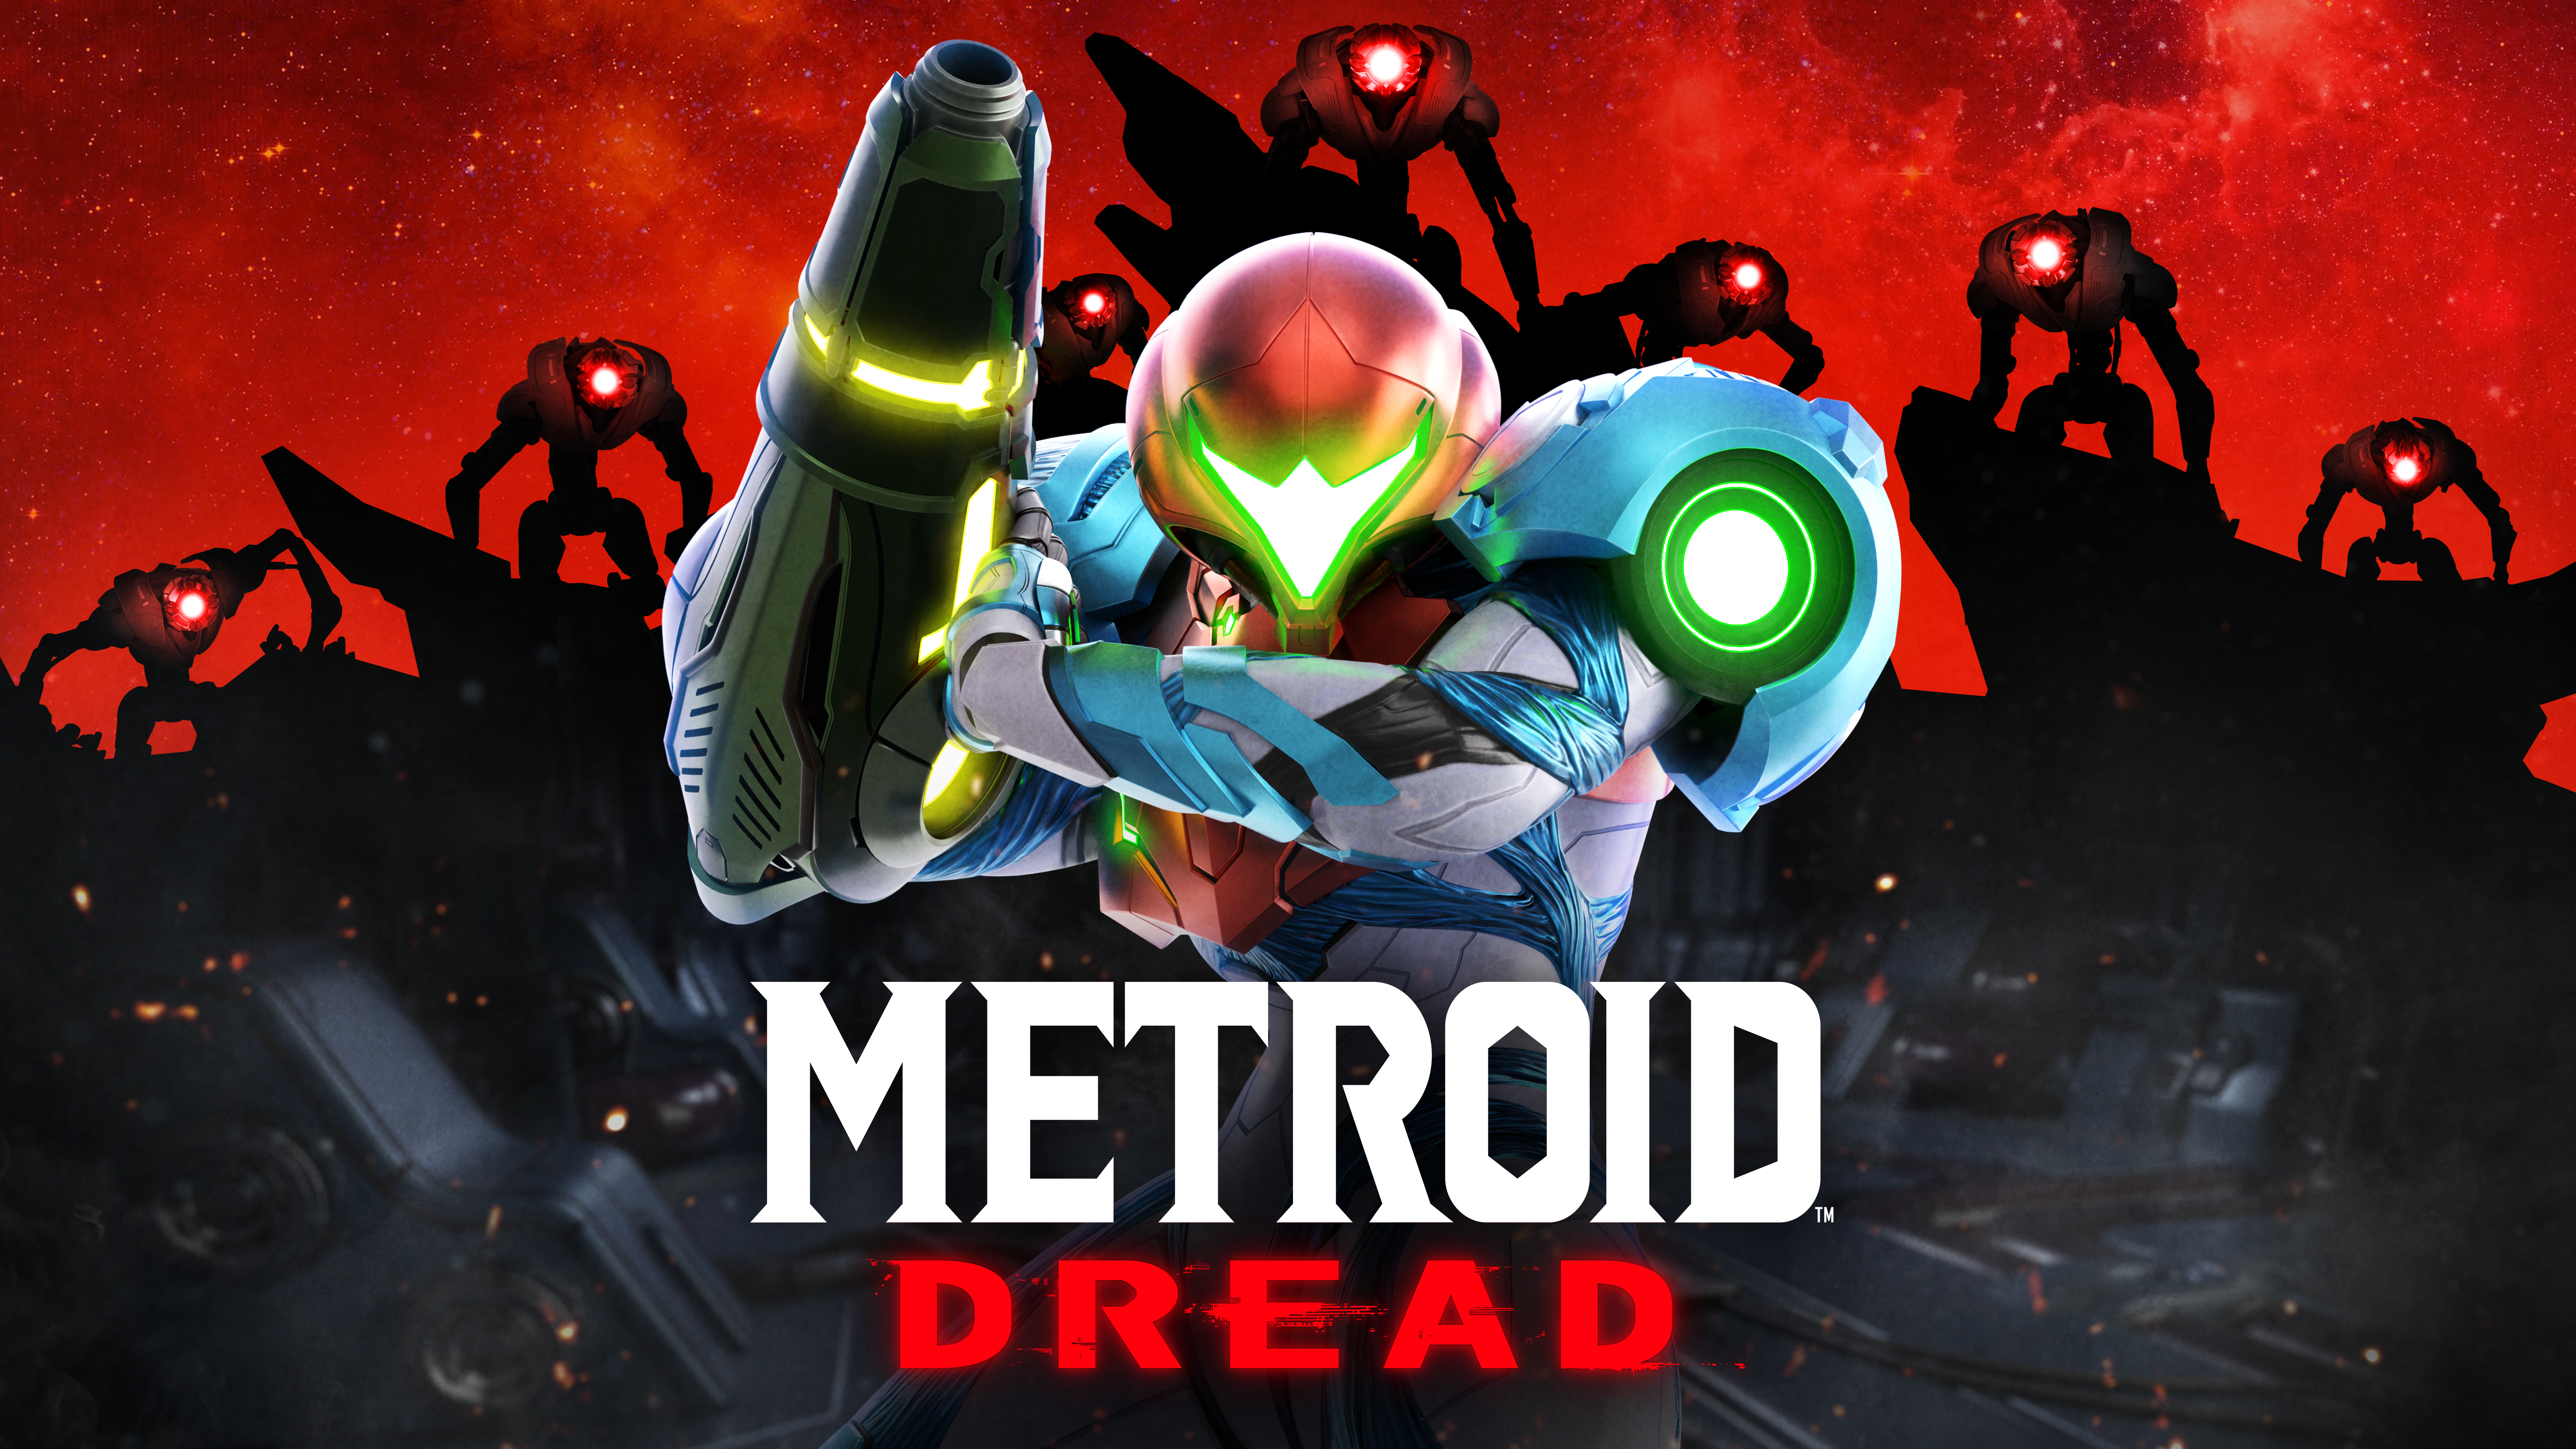 Metroid Dread figura entre os jogos mais vendidos na Amazon desde seu anúncio